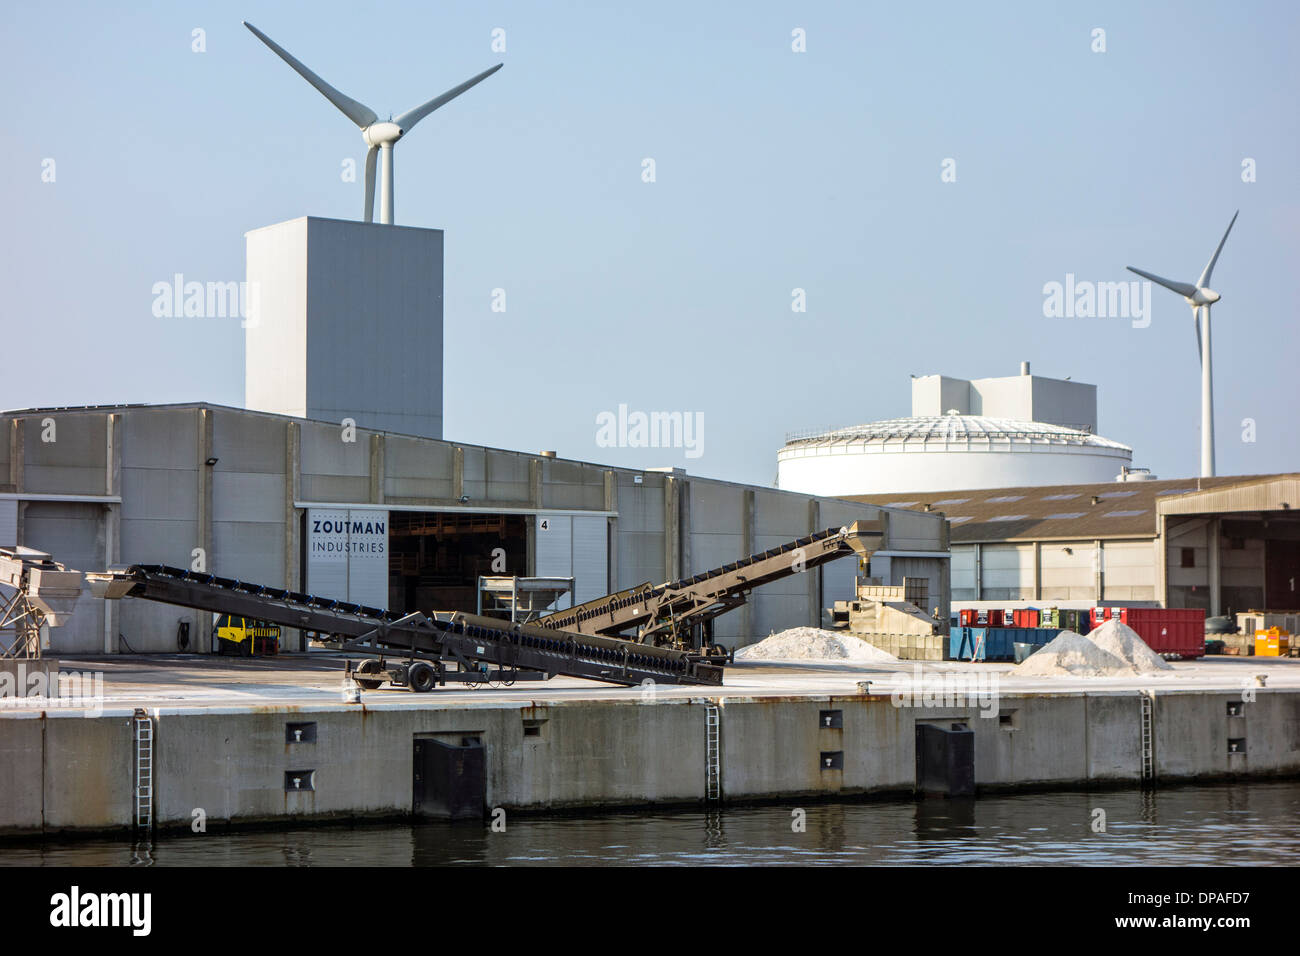 Zoutman, spezialisierte Unternehmen in der Herstellung und Verarbeitung von Meersalz und Auftausalz im Hafen von Gent, Ost-Flandern, Belgien Stockfoto